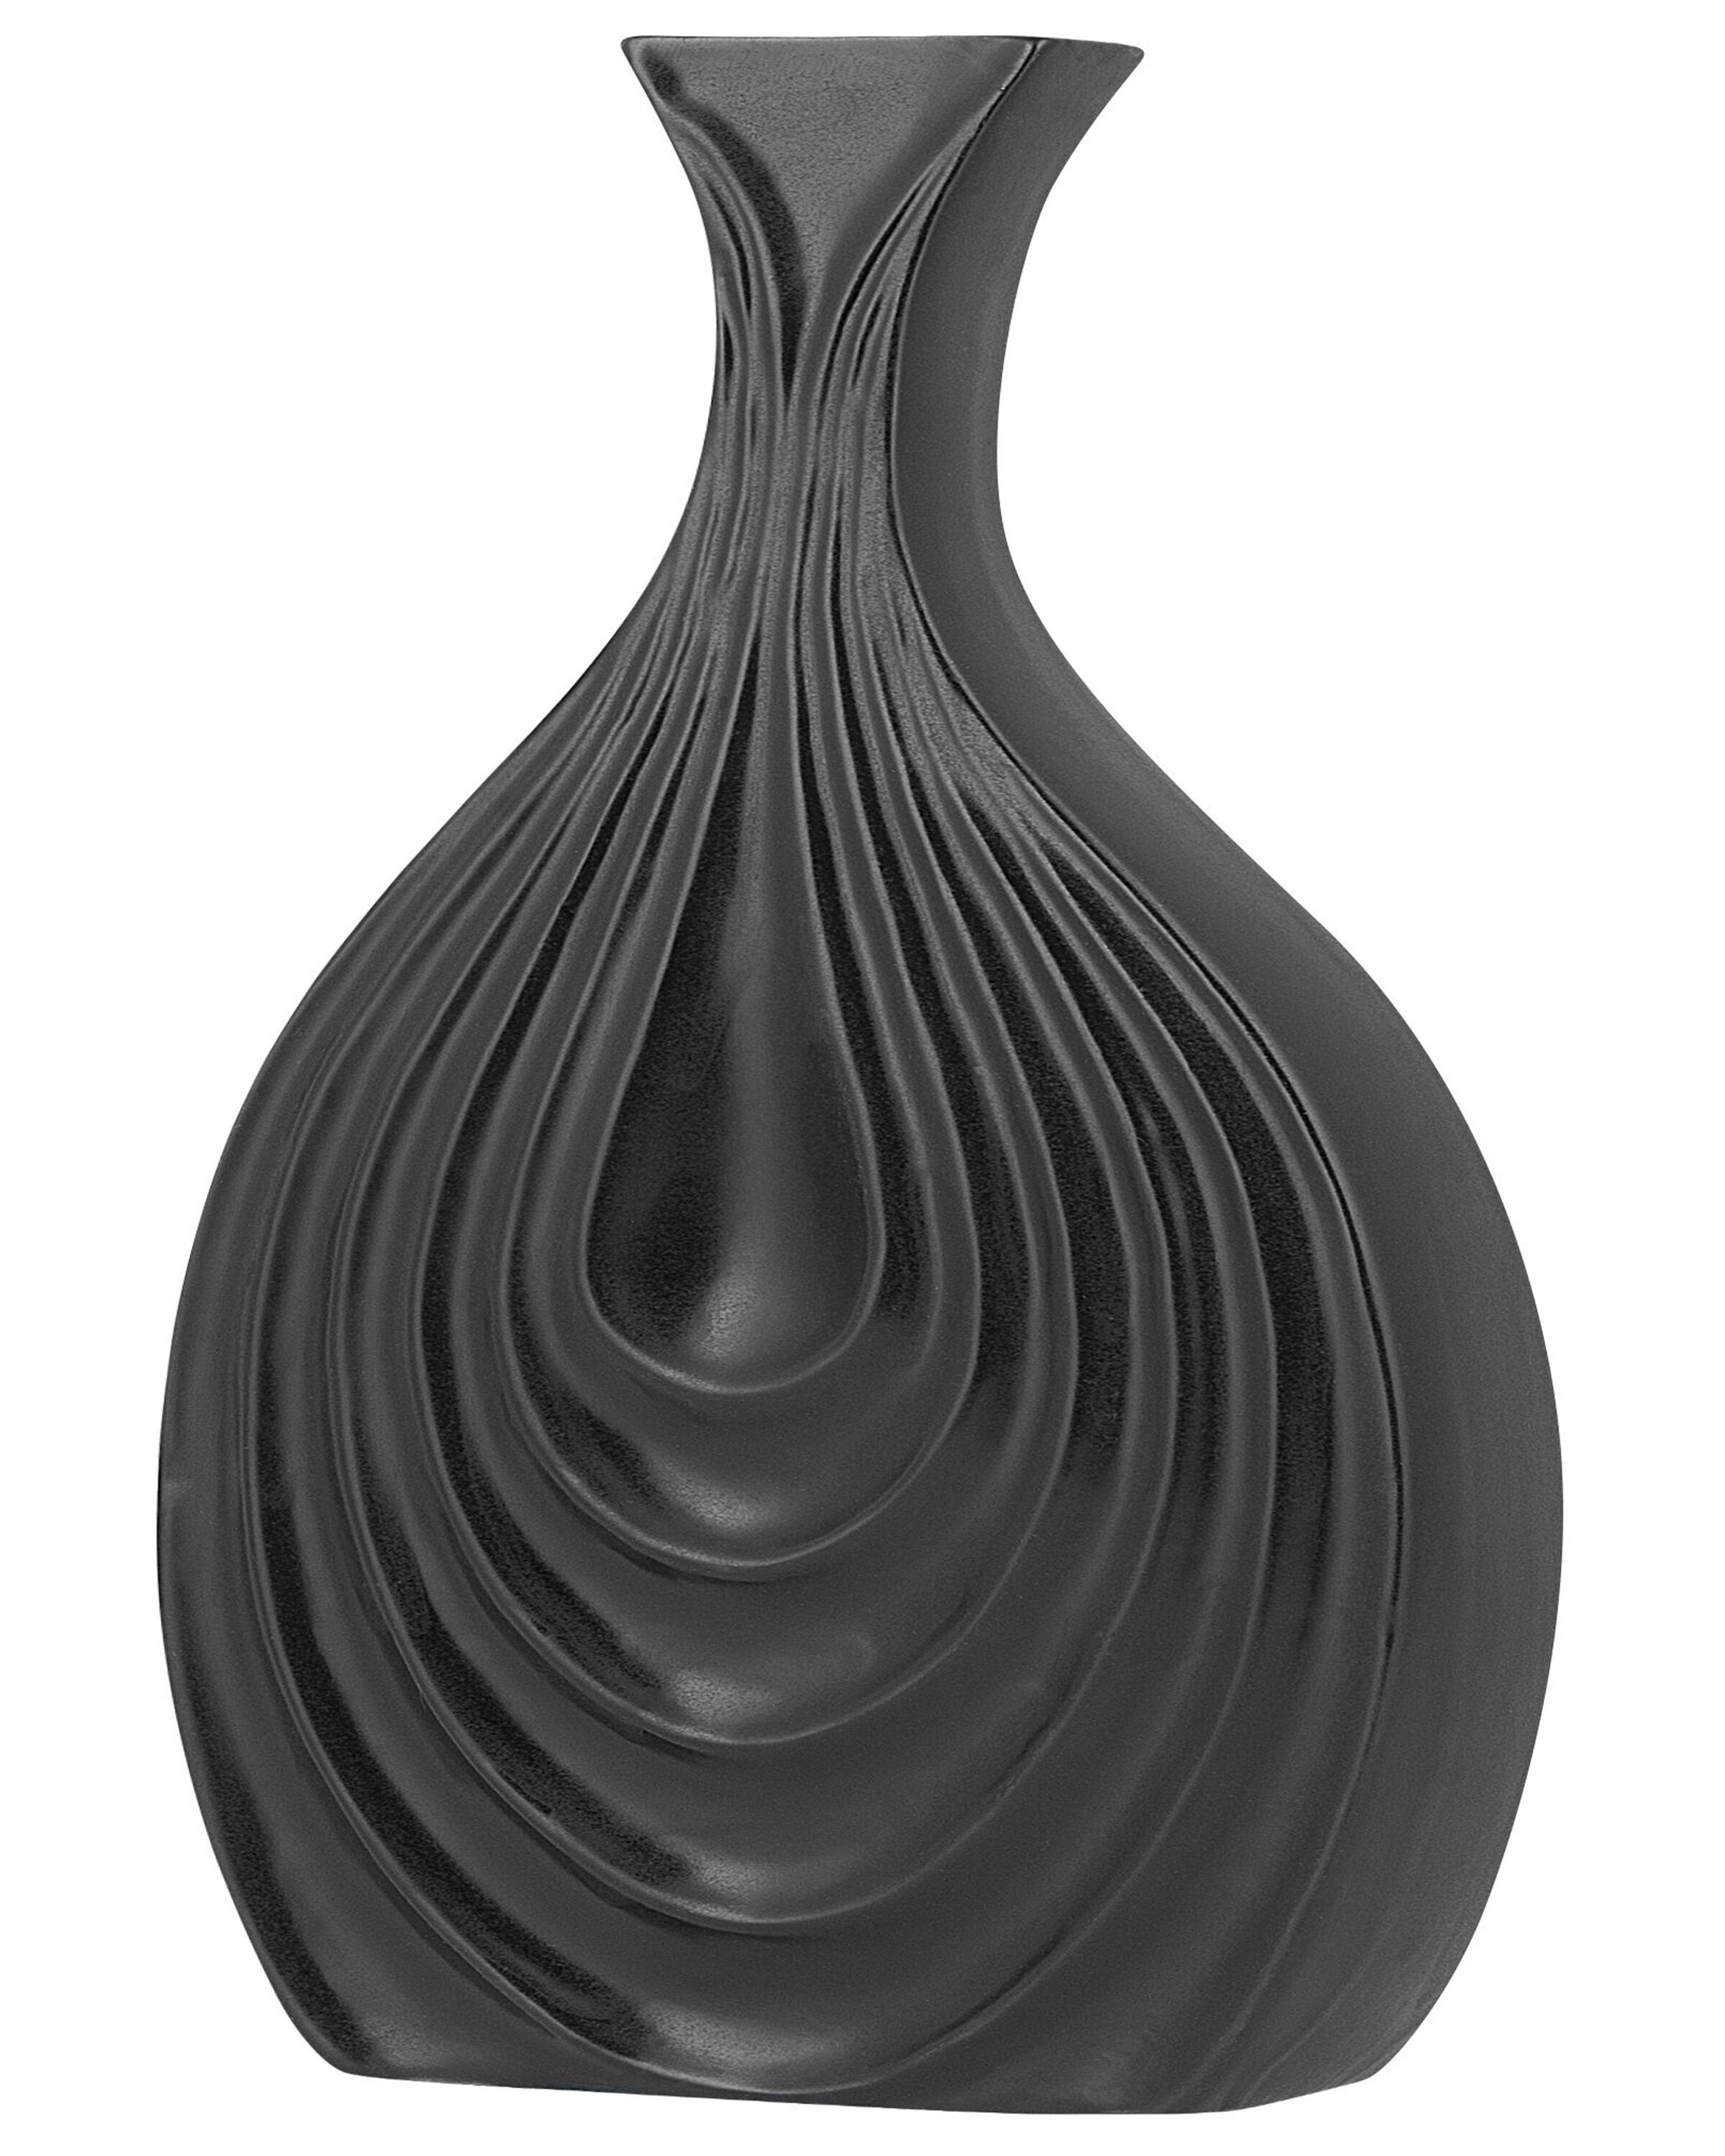 Stoneware Decorative Vase 25 cm Black THAPSUS_734339